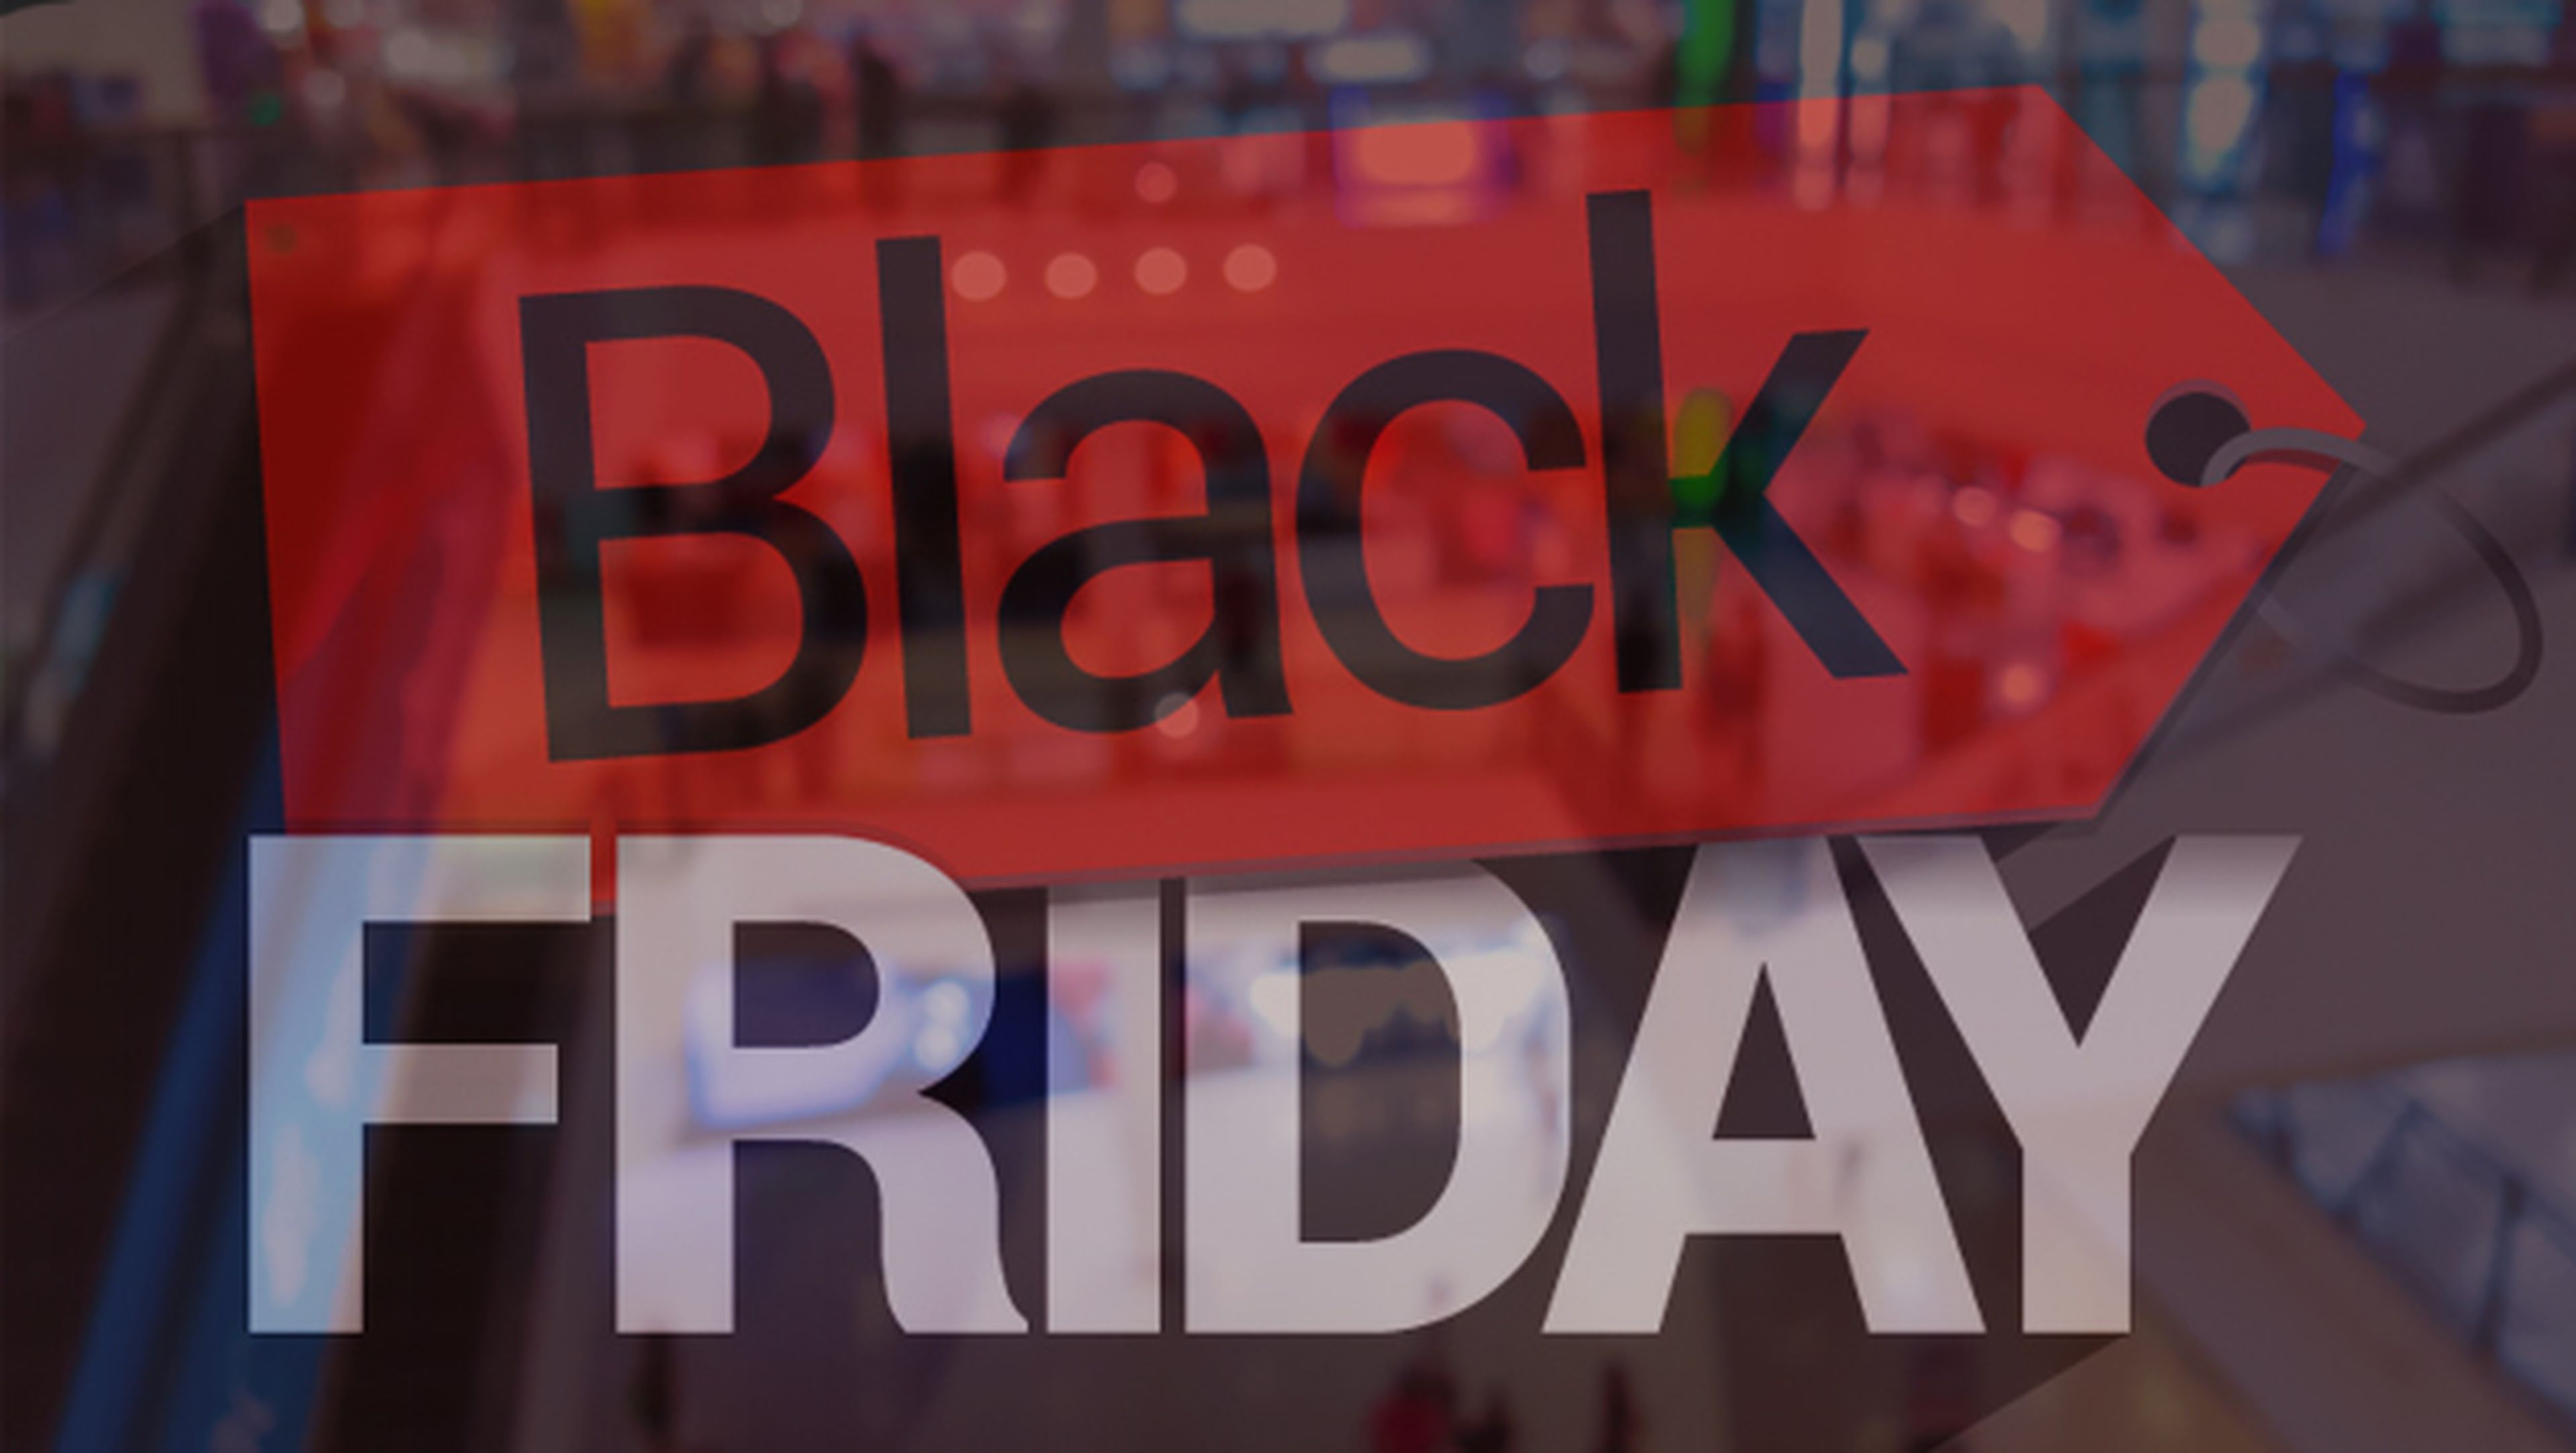 Black Friday 2015: ¿qué tiendas tienen ofertas?